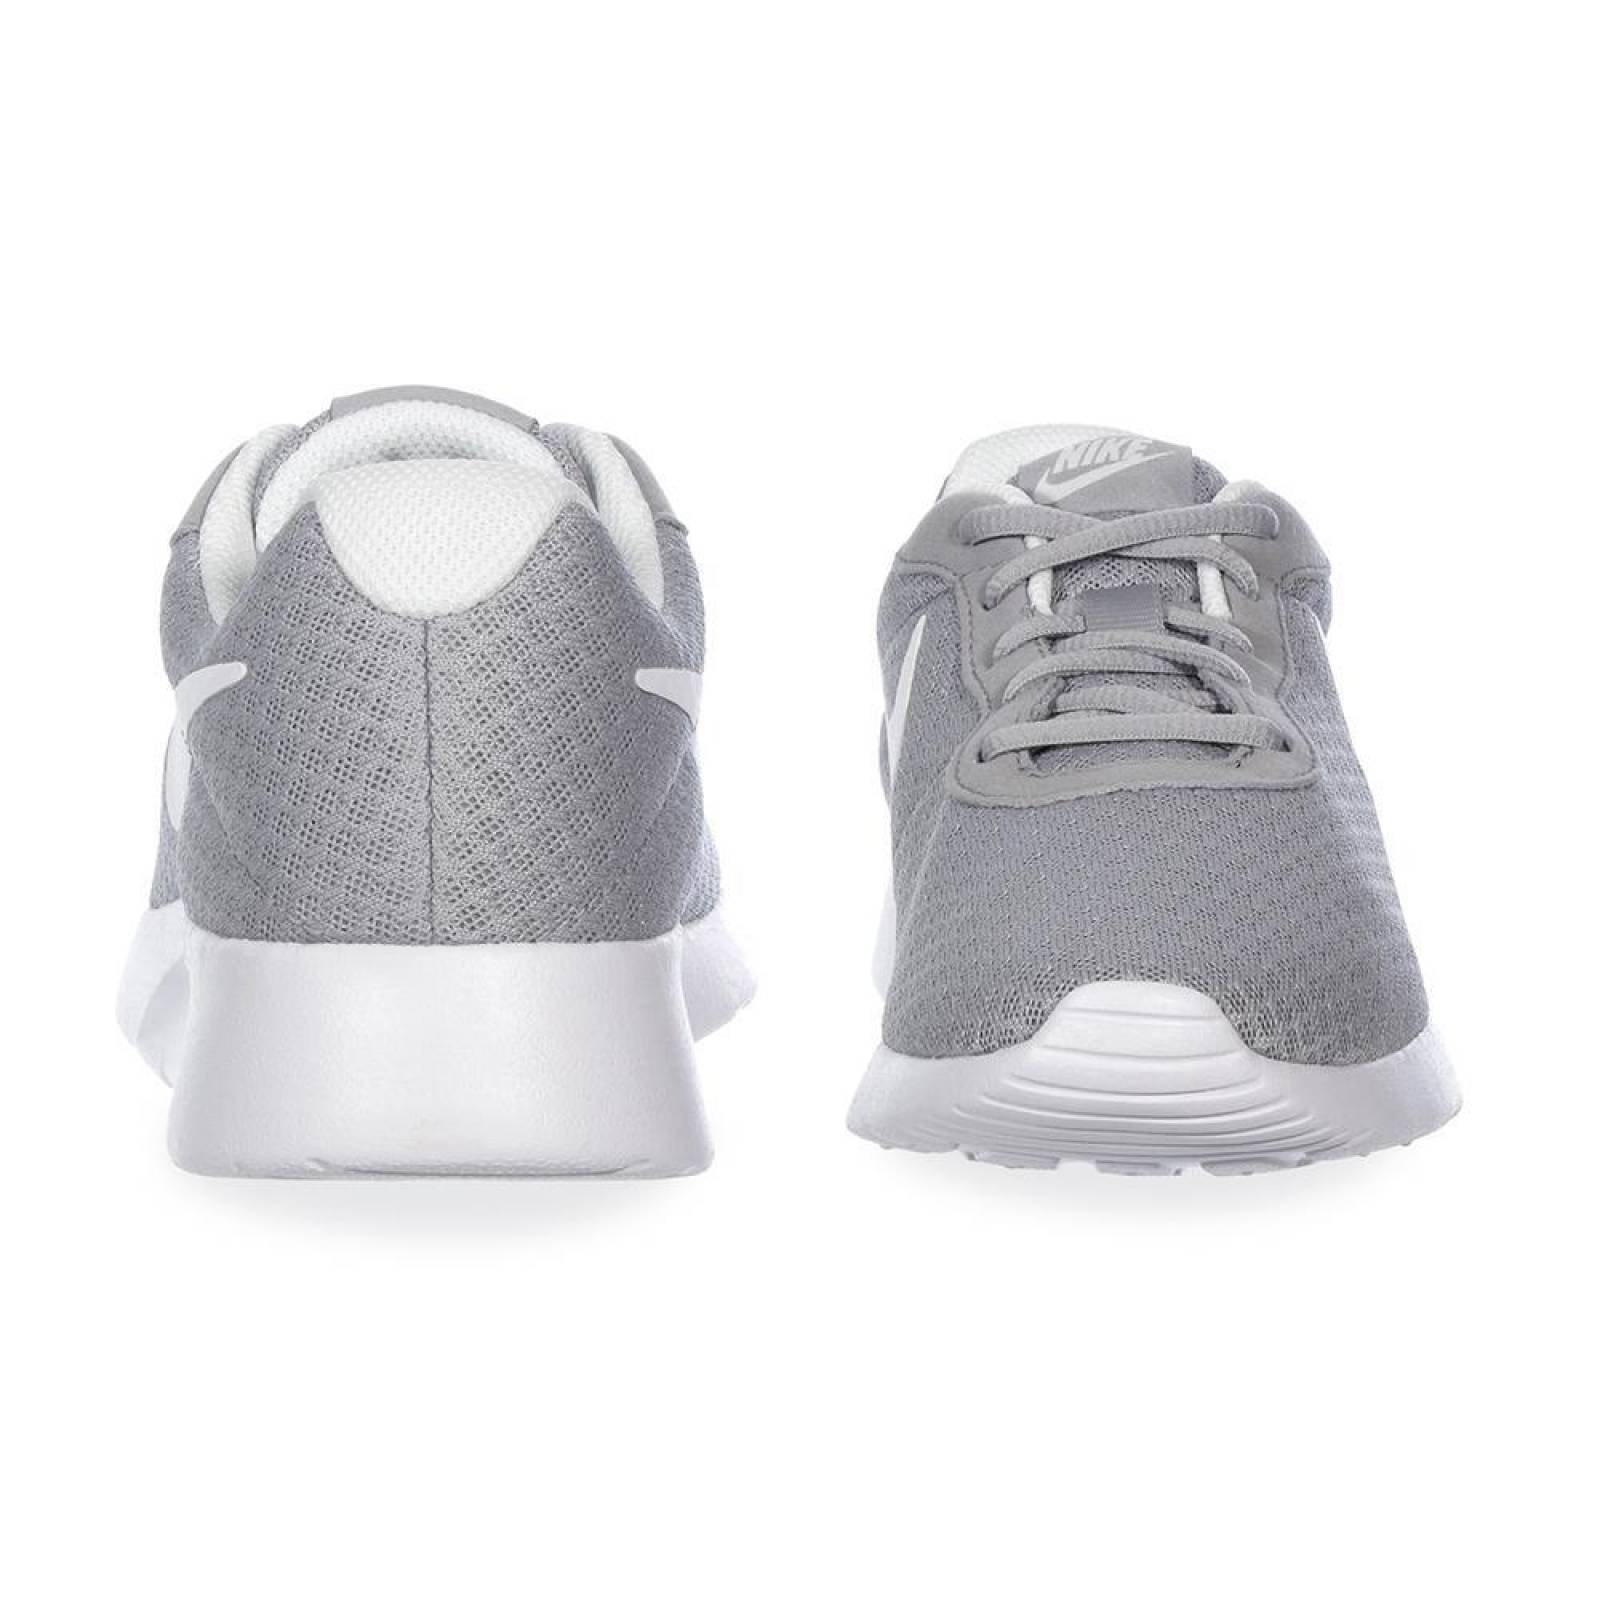 Tenis Nike Tanjun - 812654010 - Gris - Hombre 